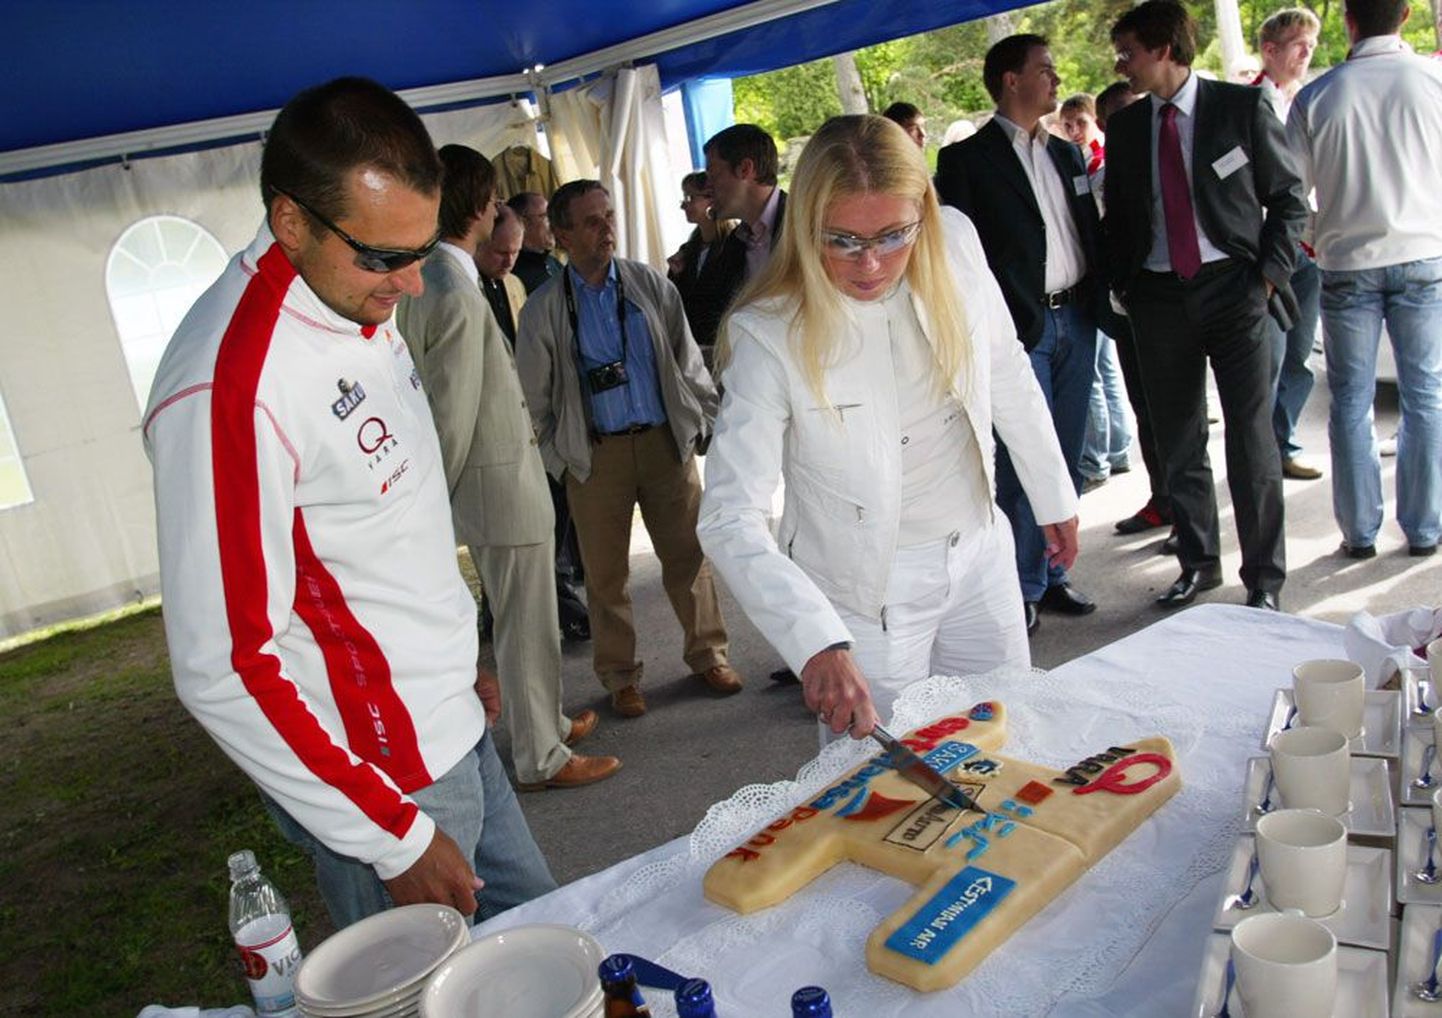 Torino olümpiavõitjad Andrus Veerpalu ja Kristina Šmigun 2006. aasta juunis Tallinnas Pirita velodroomil suusaliidu sponsorlepingute allkirjastamisel.